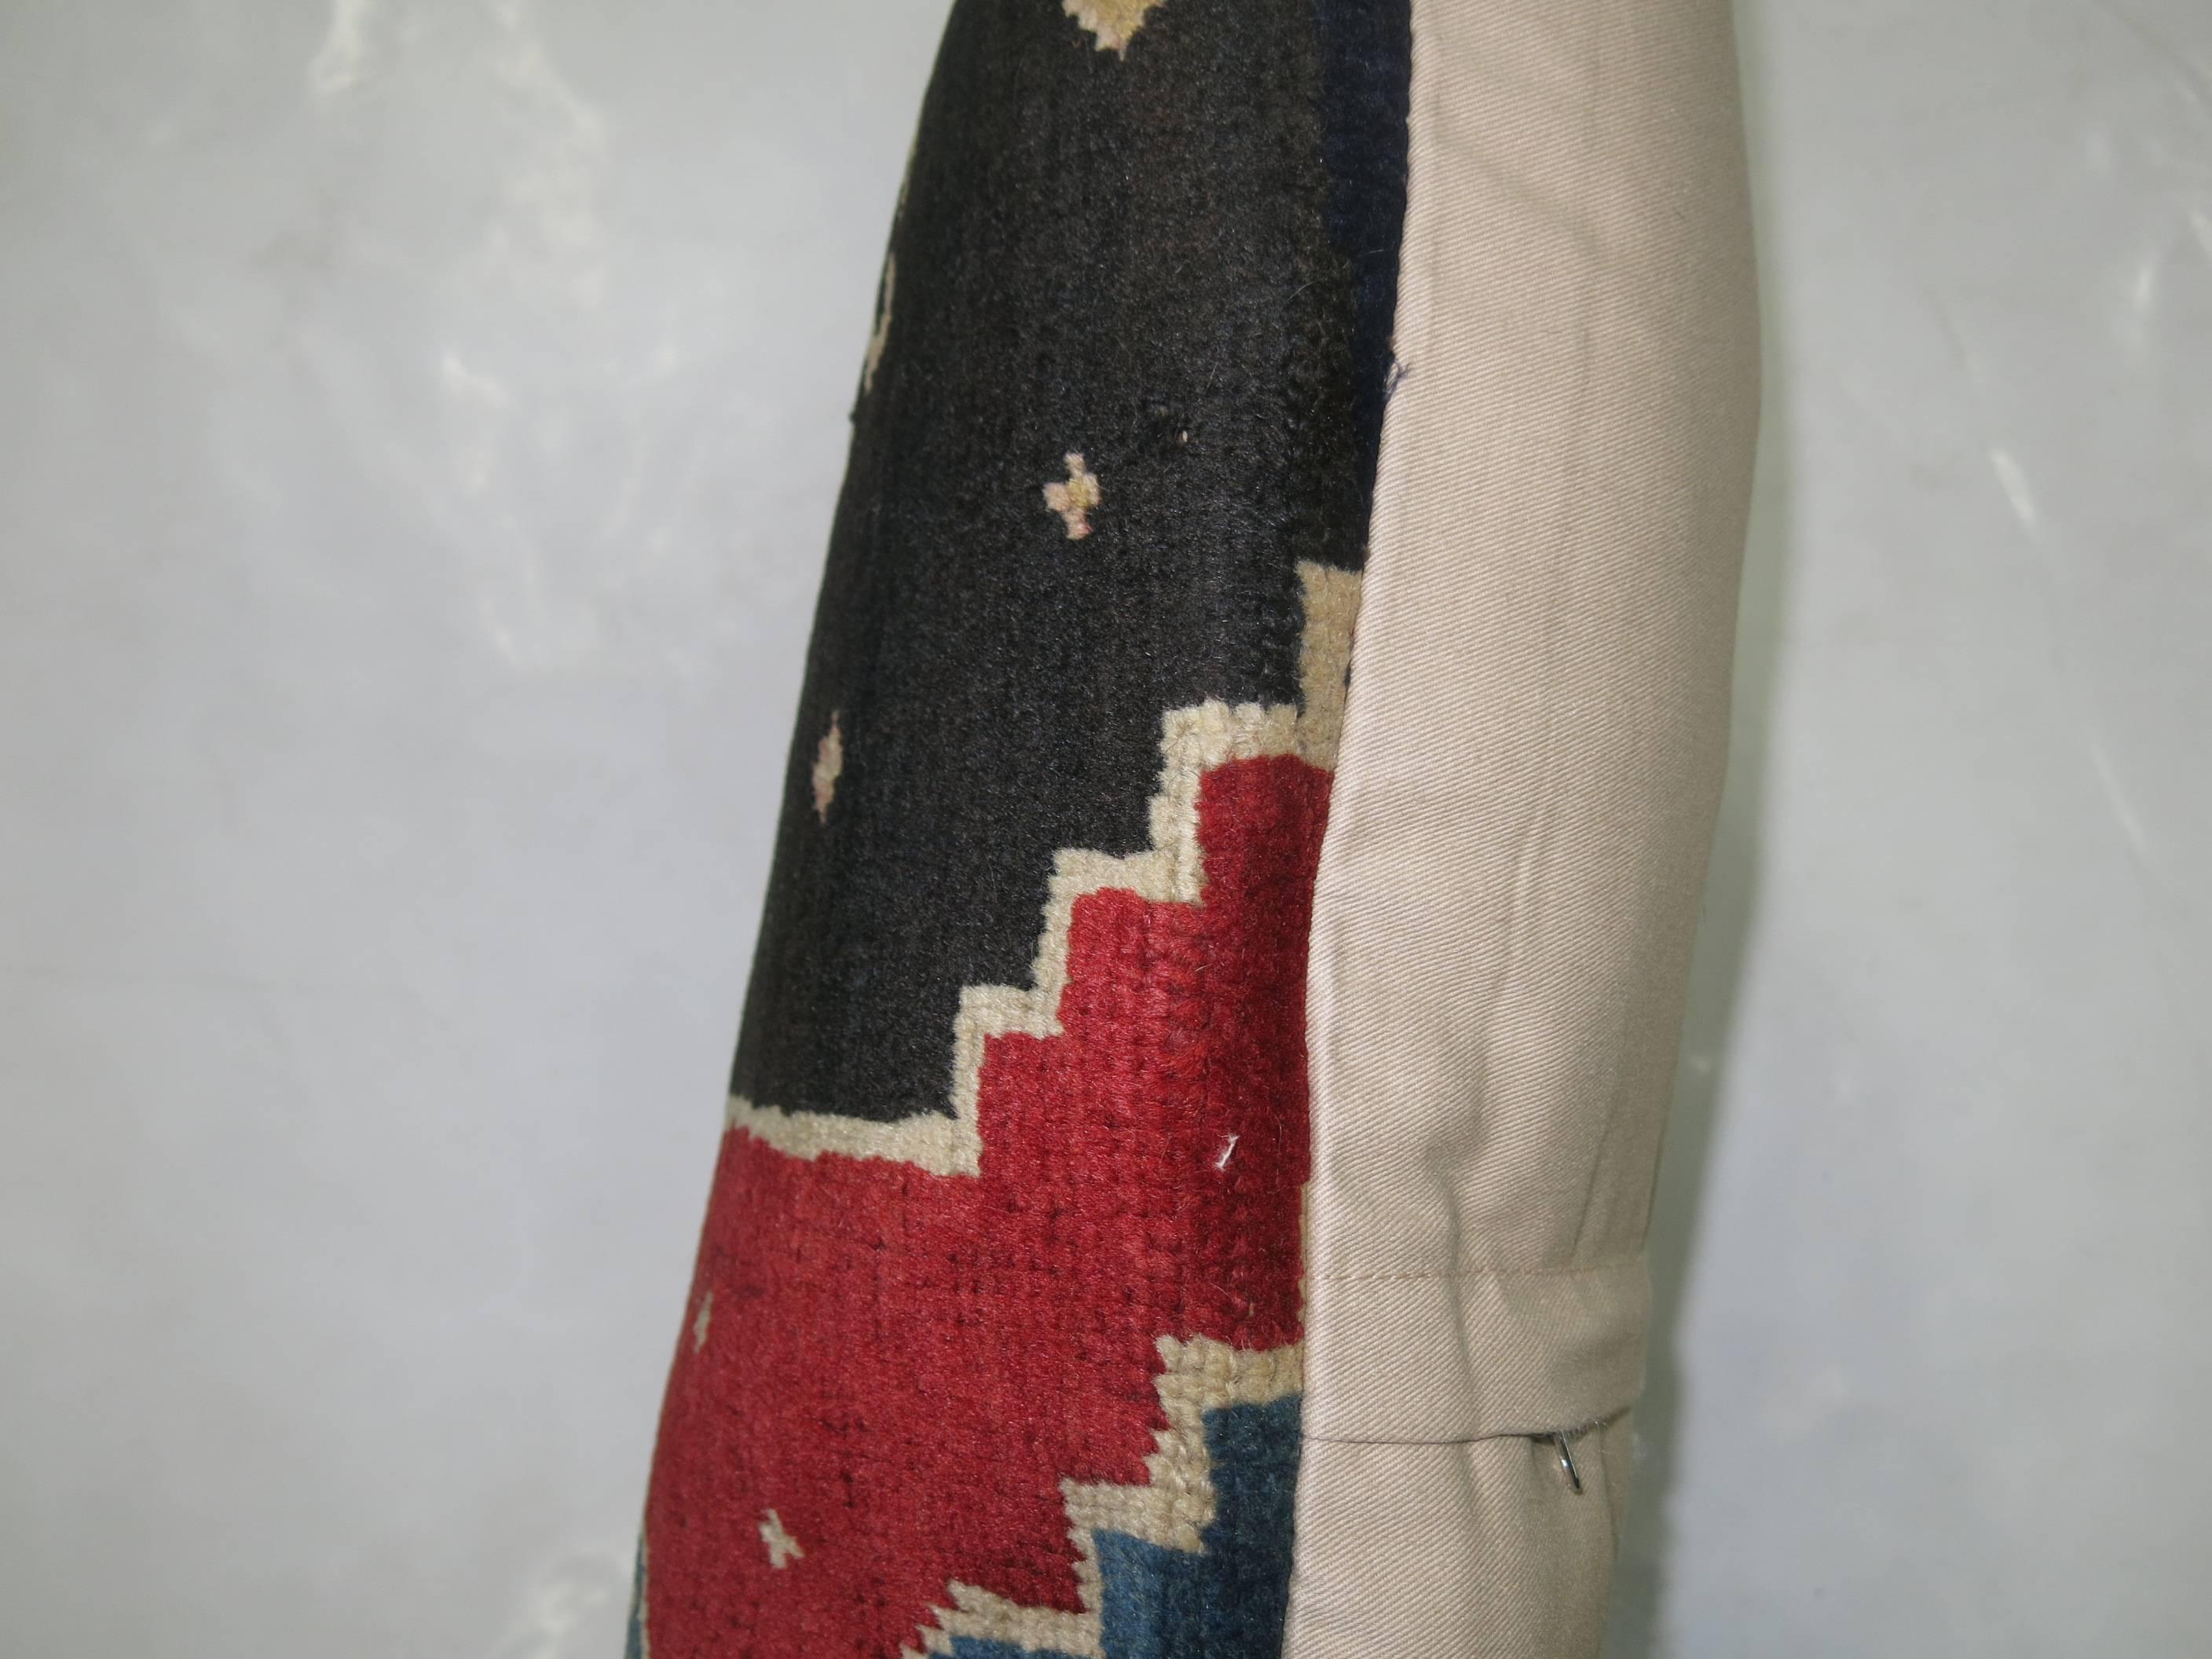 Kissen aus einem türkischen Vintage-Teppich, der von einem antiken Khotan-Teppich abgeleitet wurde, mit Reißverschluss. Ich liebe die Farbkombination und es ist eine Lendengröße.

Maße: 16